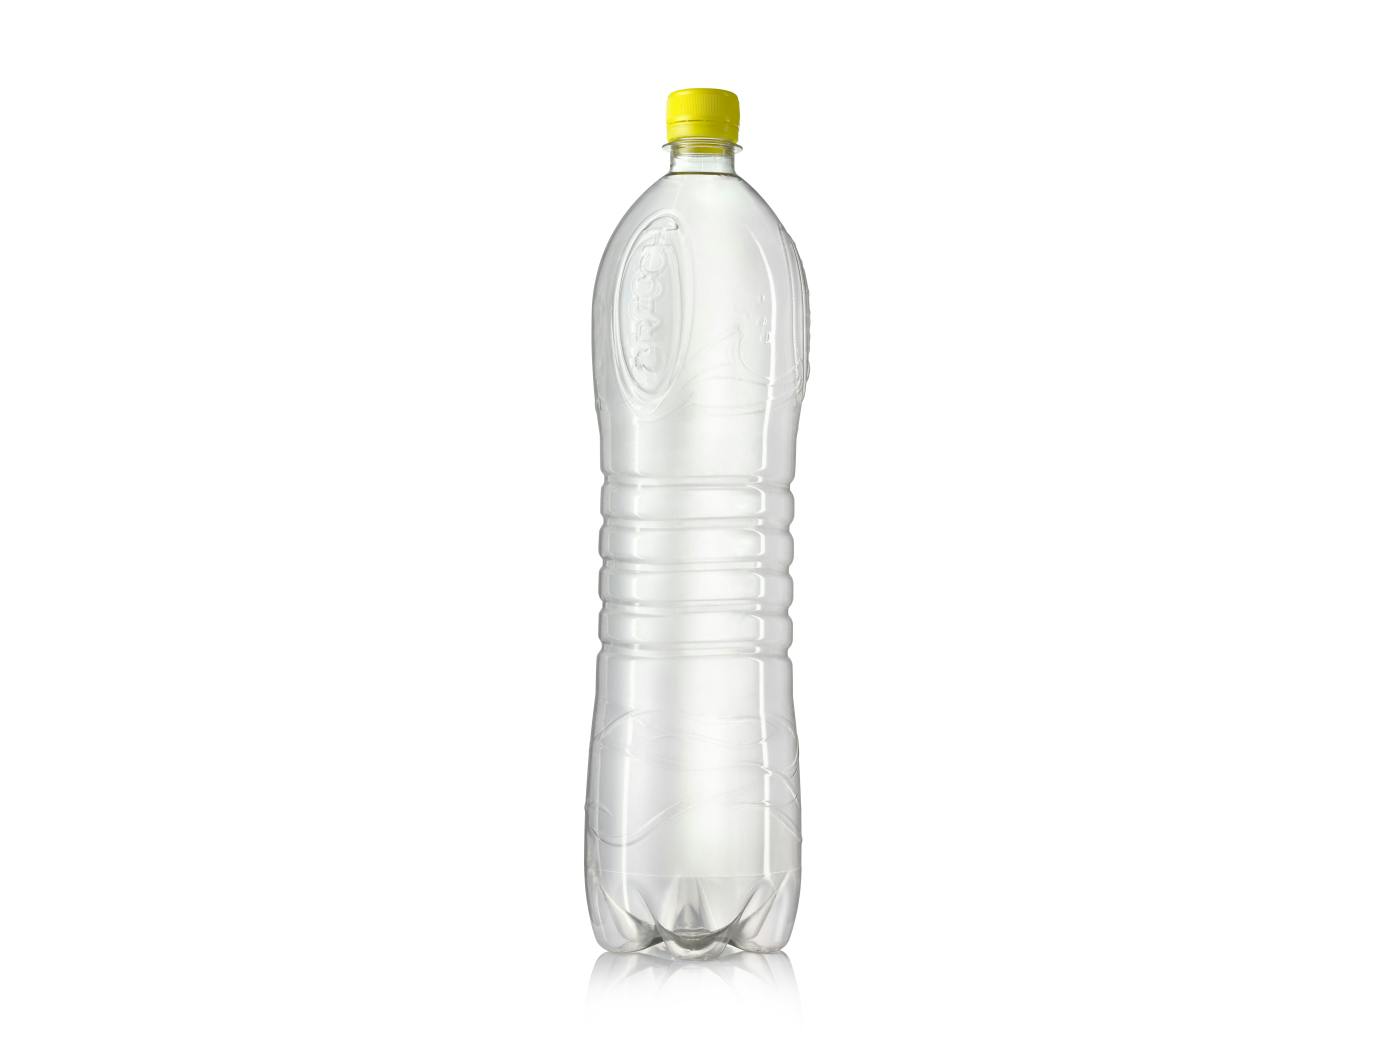 Rauch Eistee Pfirsich bottle empty with closure